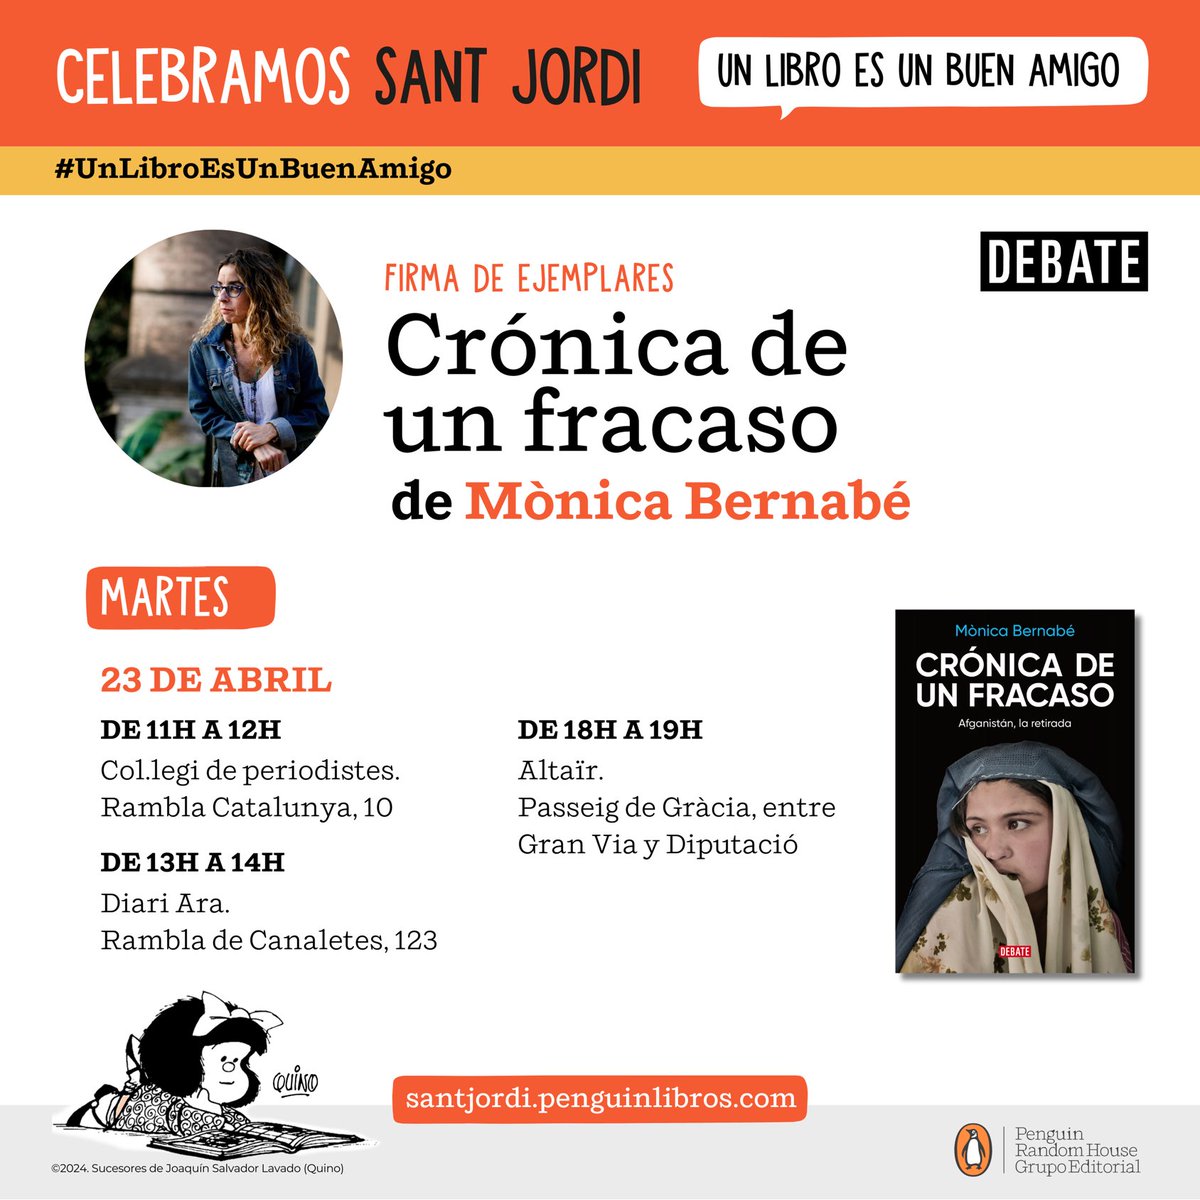 Demà, dia de Sant Jordi, estaré signant llibres a les 11h, a les 13h, i a les 18h en aquests llocs de Barcelona 👇Us espero!!